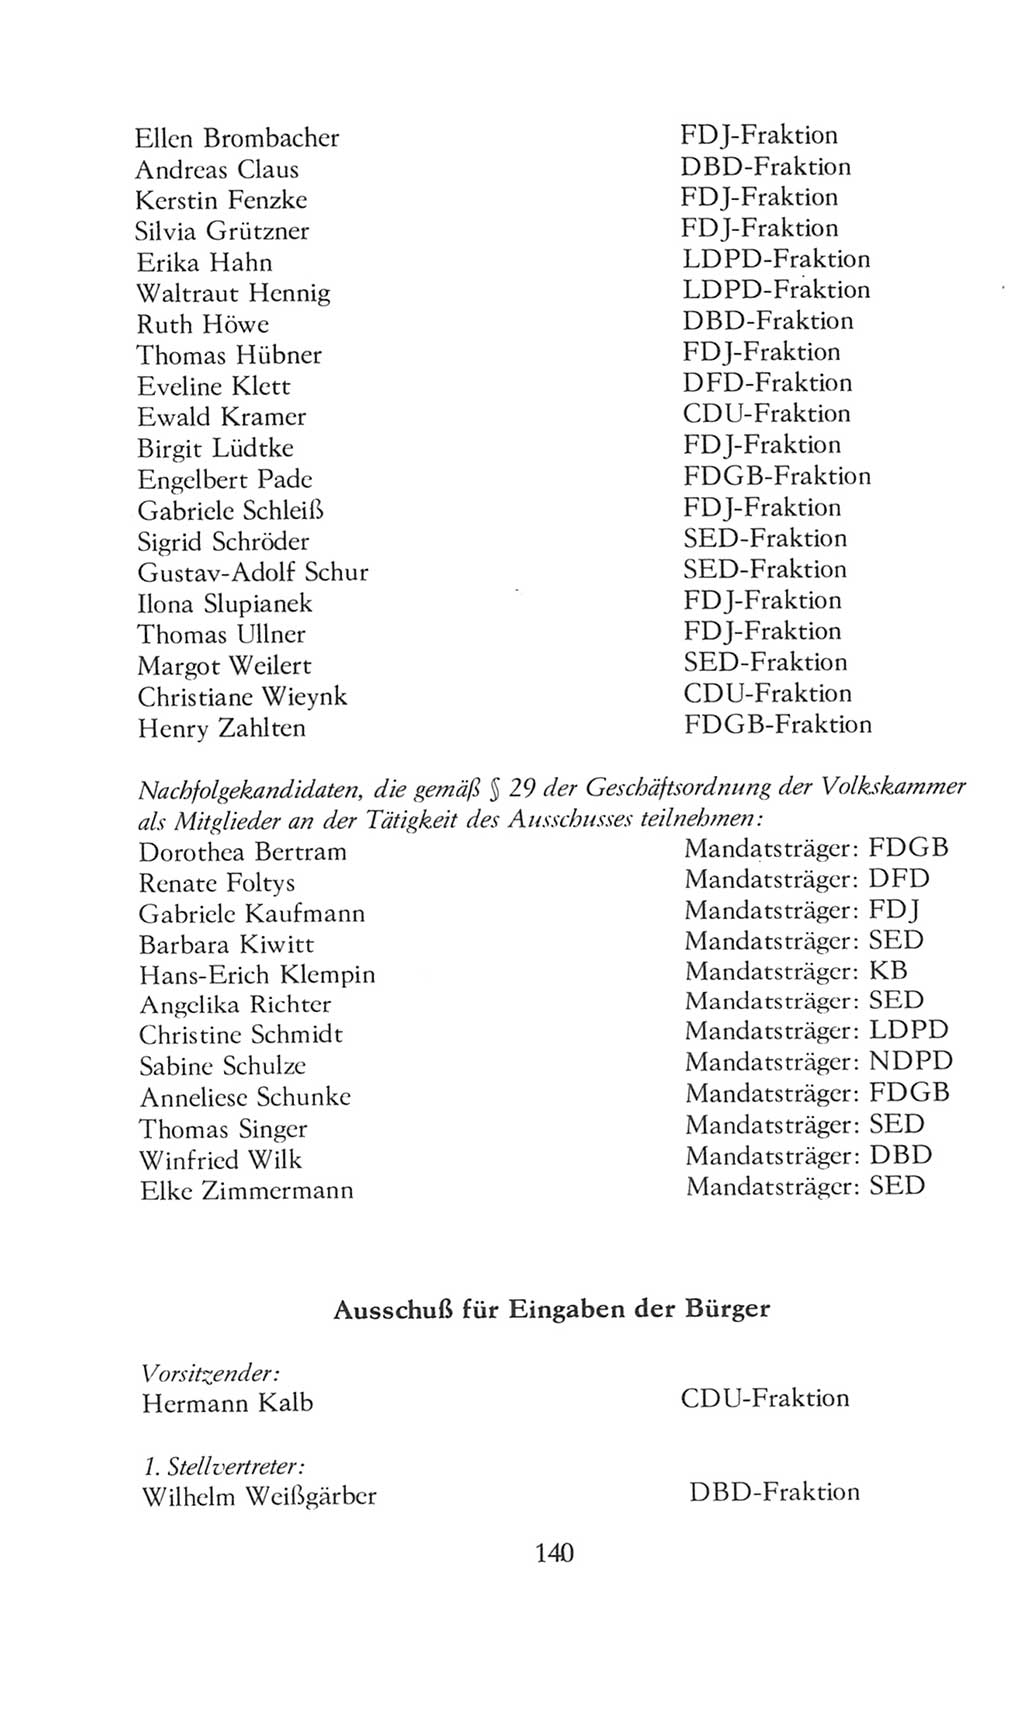 Volkskammer (VK) der Deutschen Demokratischen Republik (DDR), 8. Wahlperiode 1981-1986, Seite 140 (VK. DDR 8. WP. 1981-1986, S. 140)